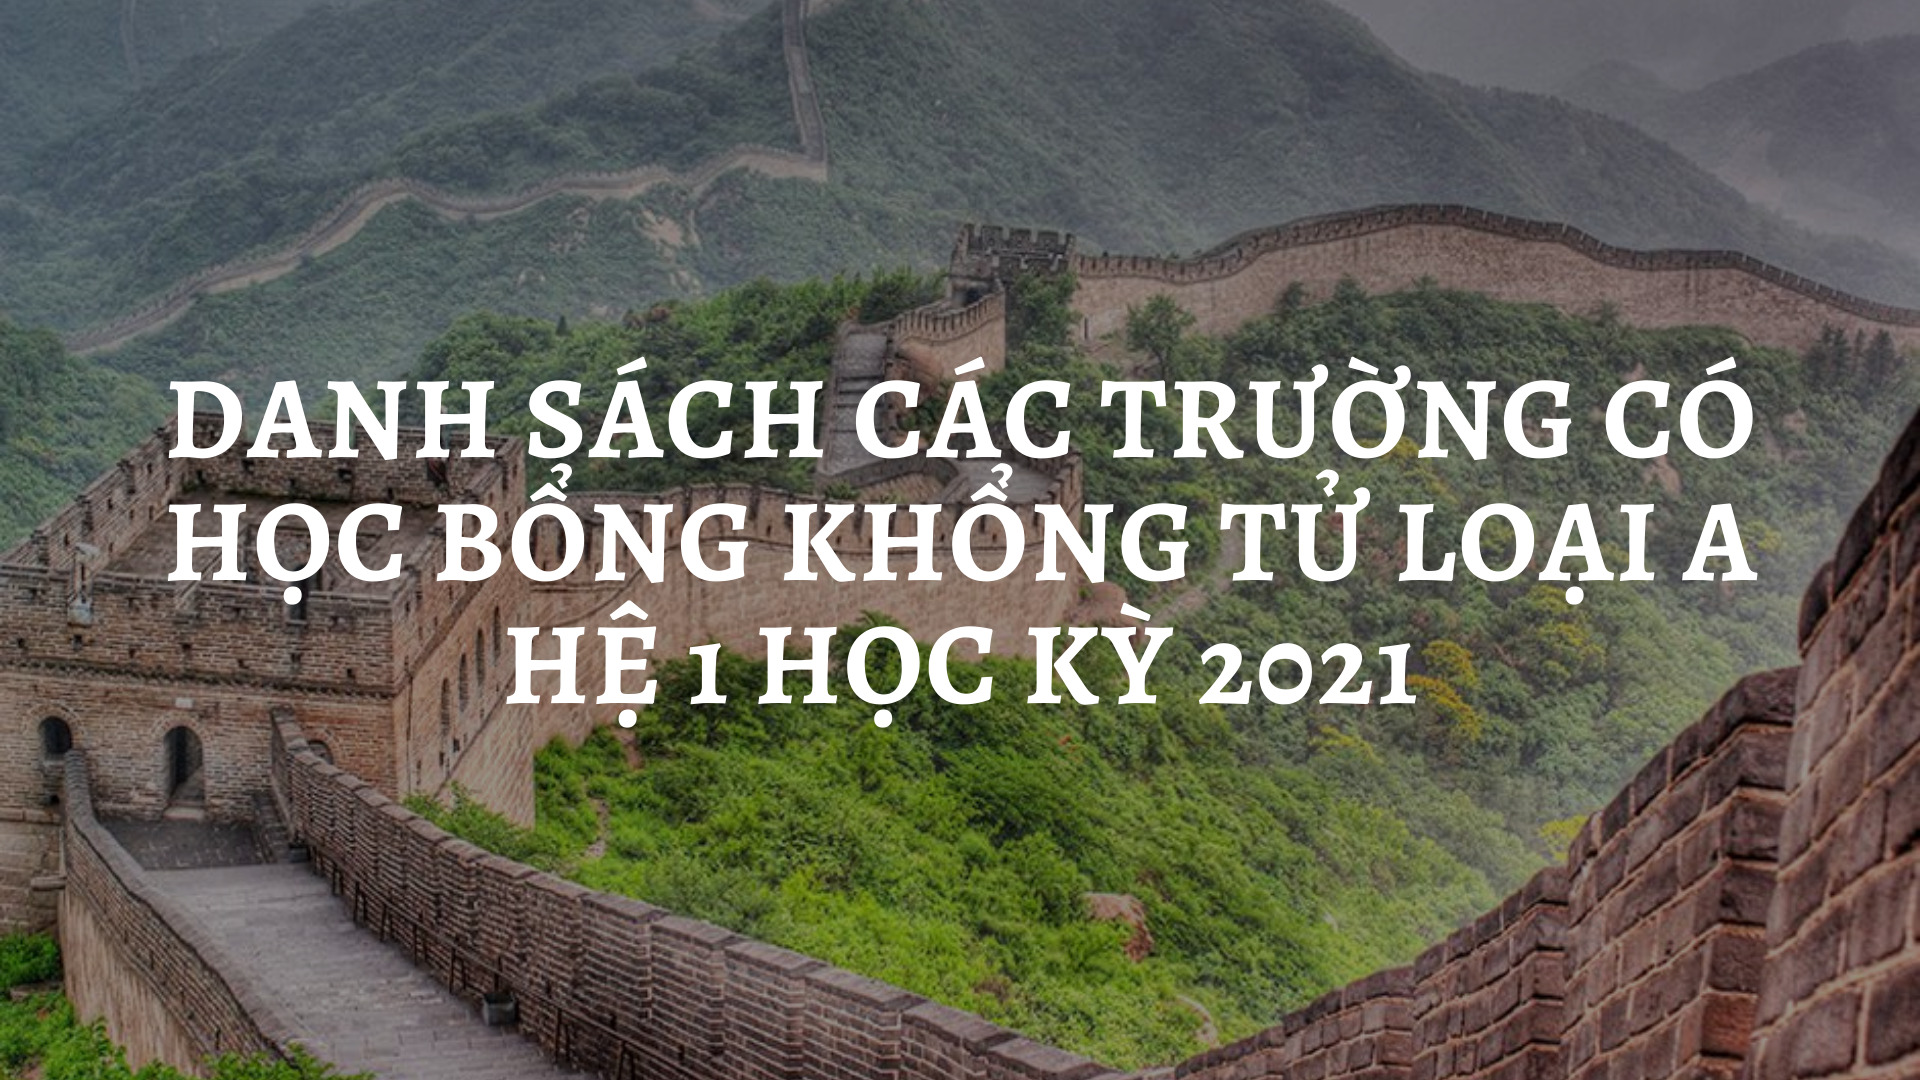 Danh Sach Cac Truong Co Hoc Bong Khong Tu Loai A He 1 Hoc Ky Nam 2021 2022